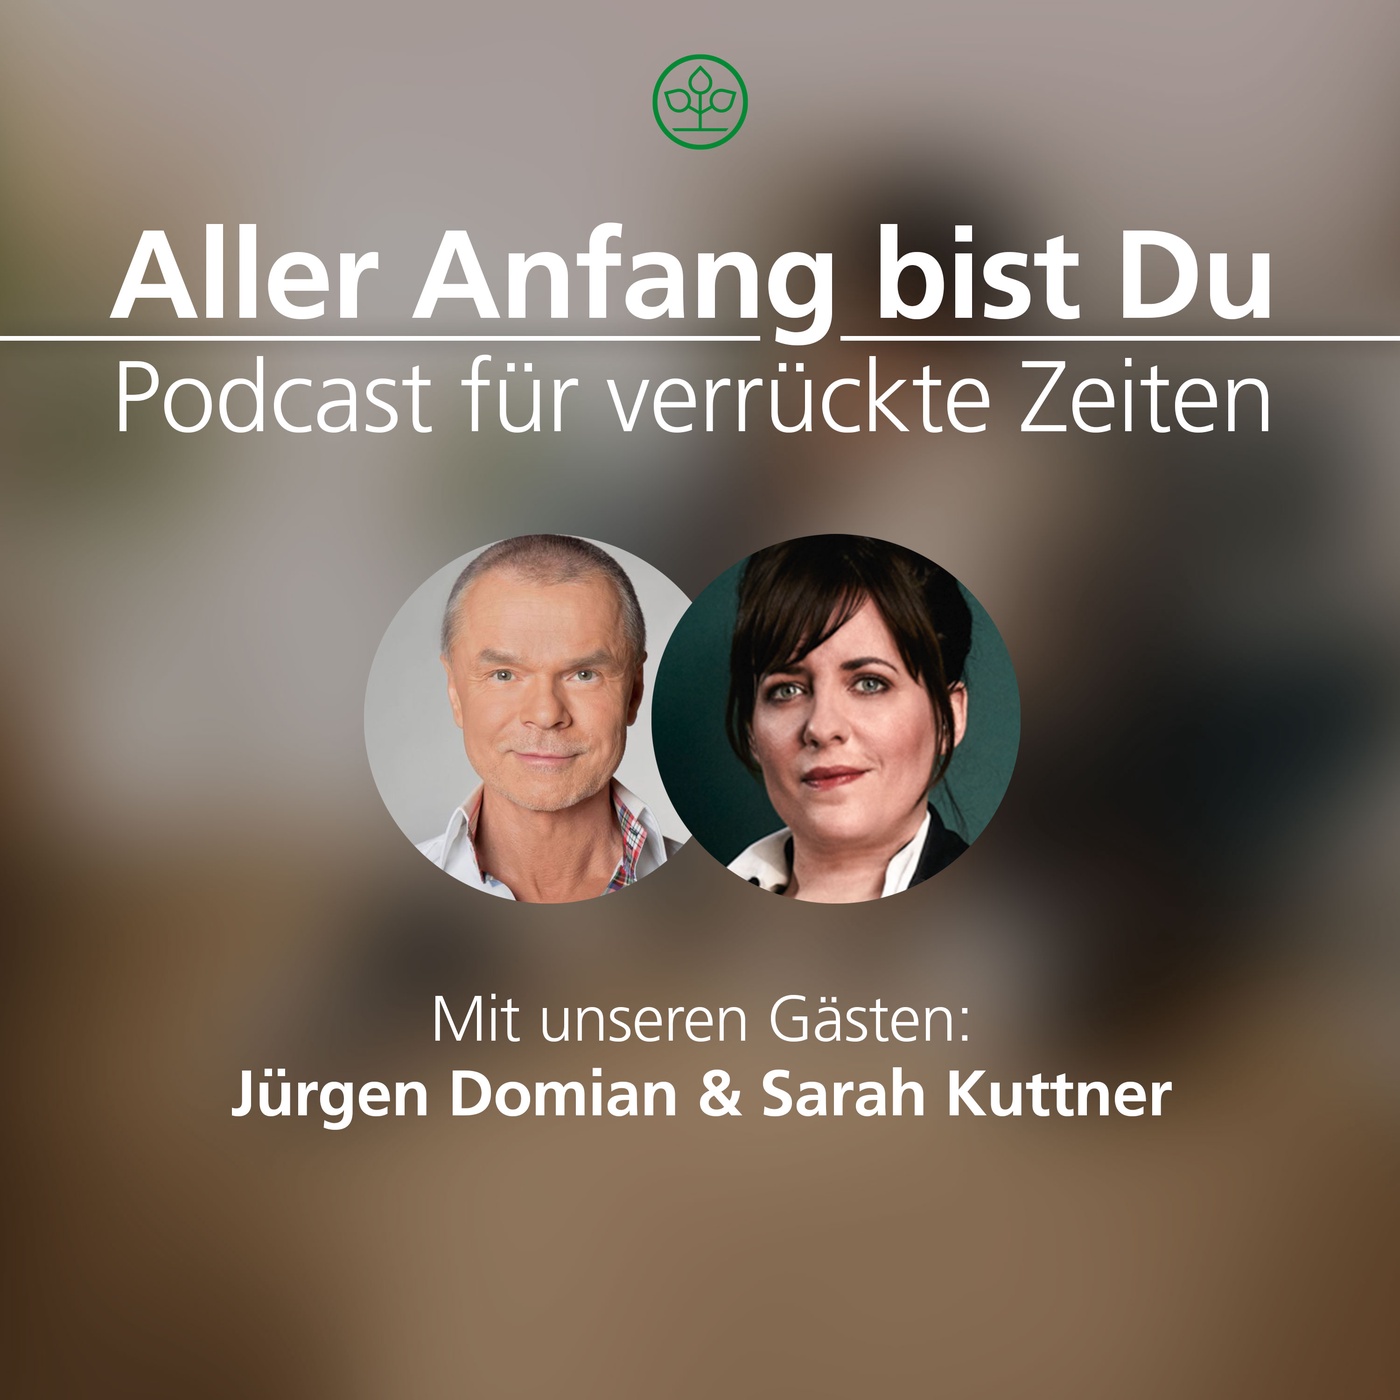 #01 „Alle mal Calma!“ mit Sarah Kuttner & Jürgen Domian